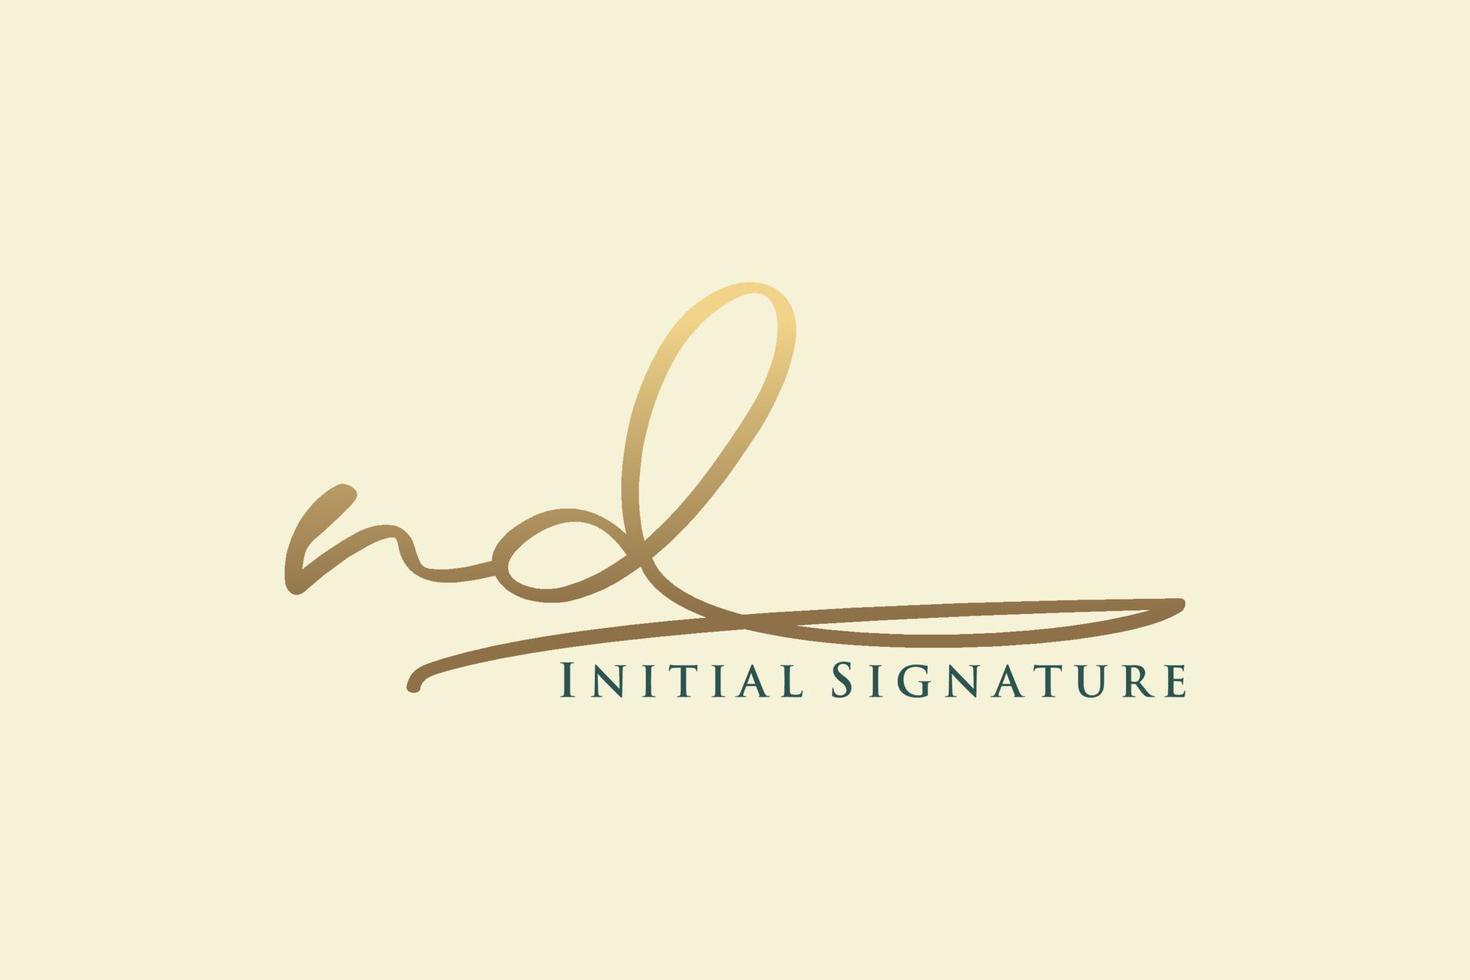 plantilla de logotipo de firma de letra n inicial logotipo de diseño elegante. ilustración de vector de letras de caligrafía dibujada a mano.